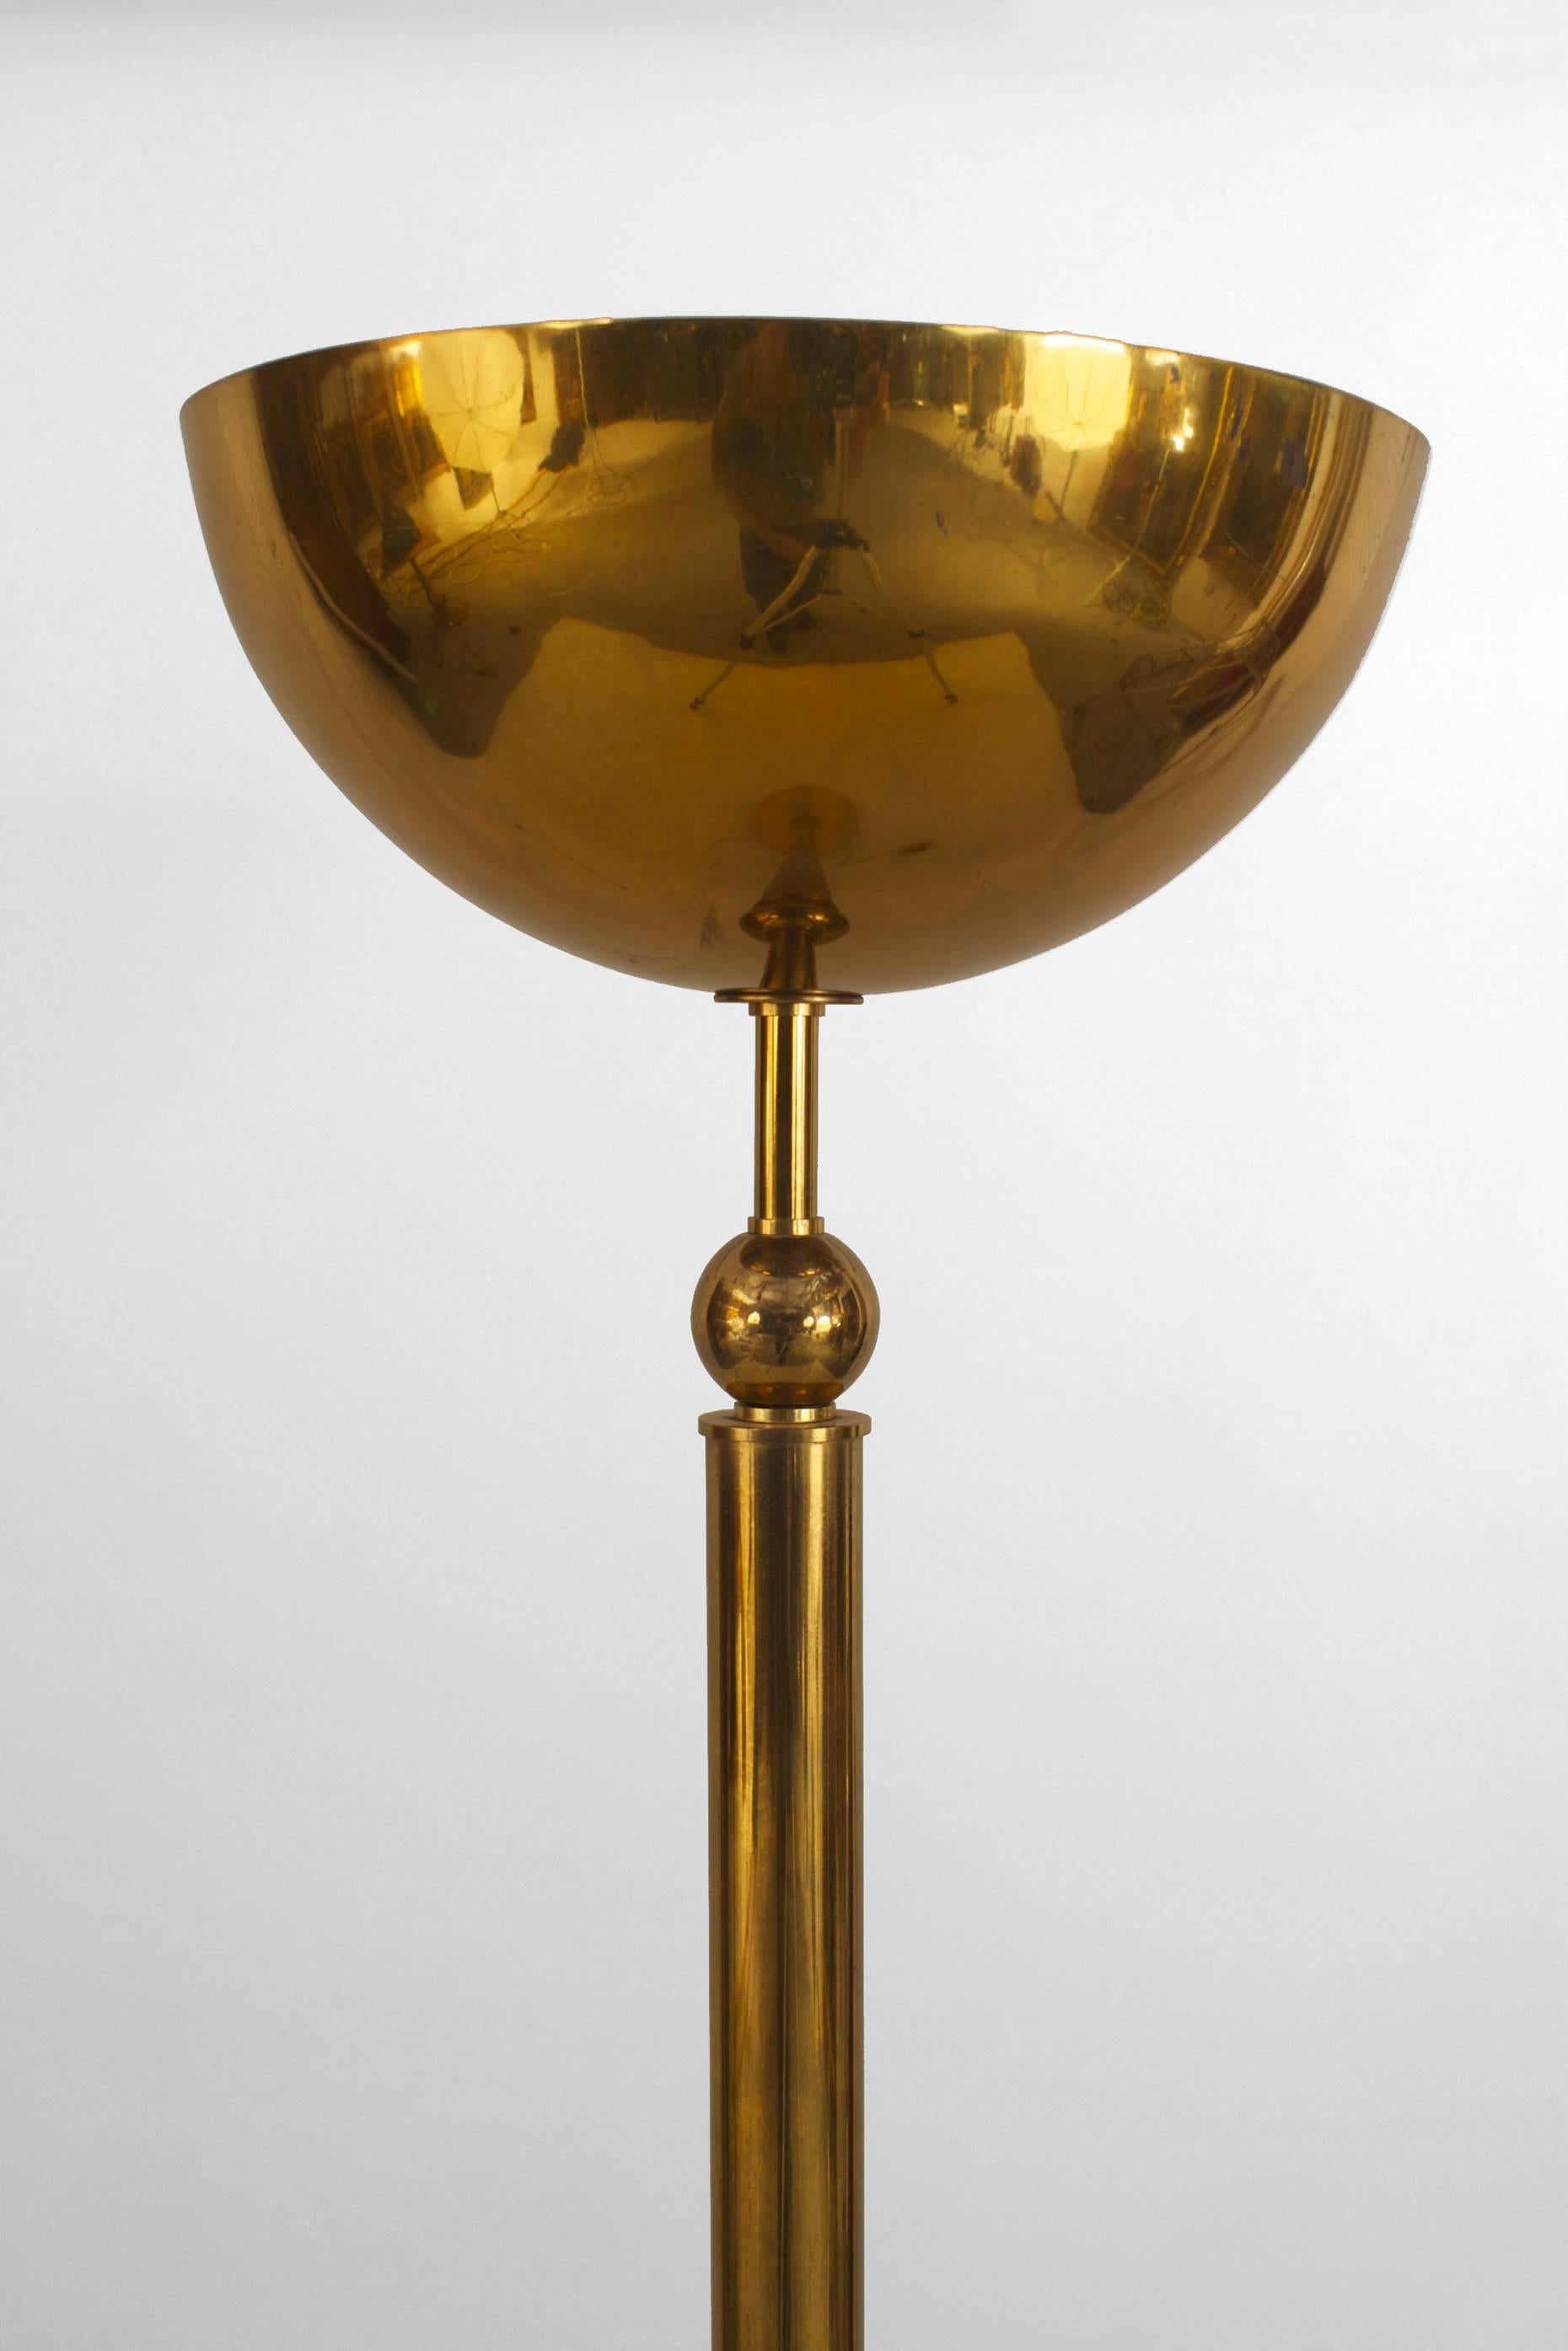 Französische Stehlampe aus Messing aus den 1940er Jahren mit einem zylindrischen Schaft, der eine große Kuppel trägt und auf einem runden Sockel ruht.
